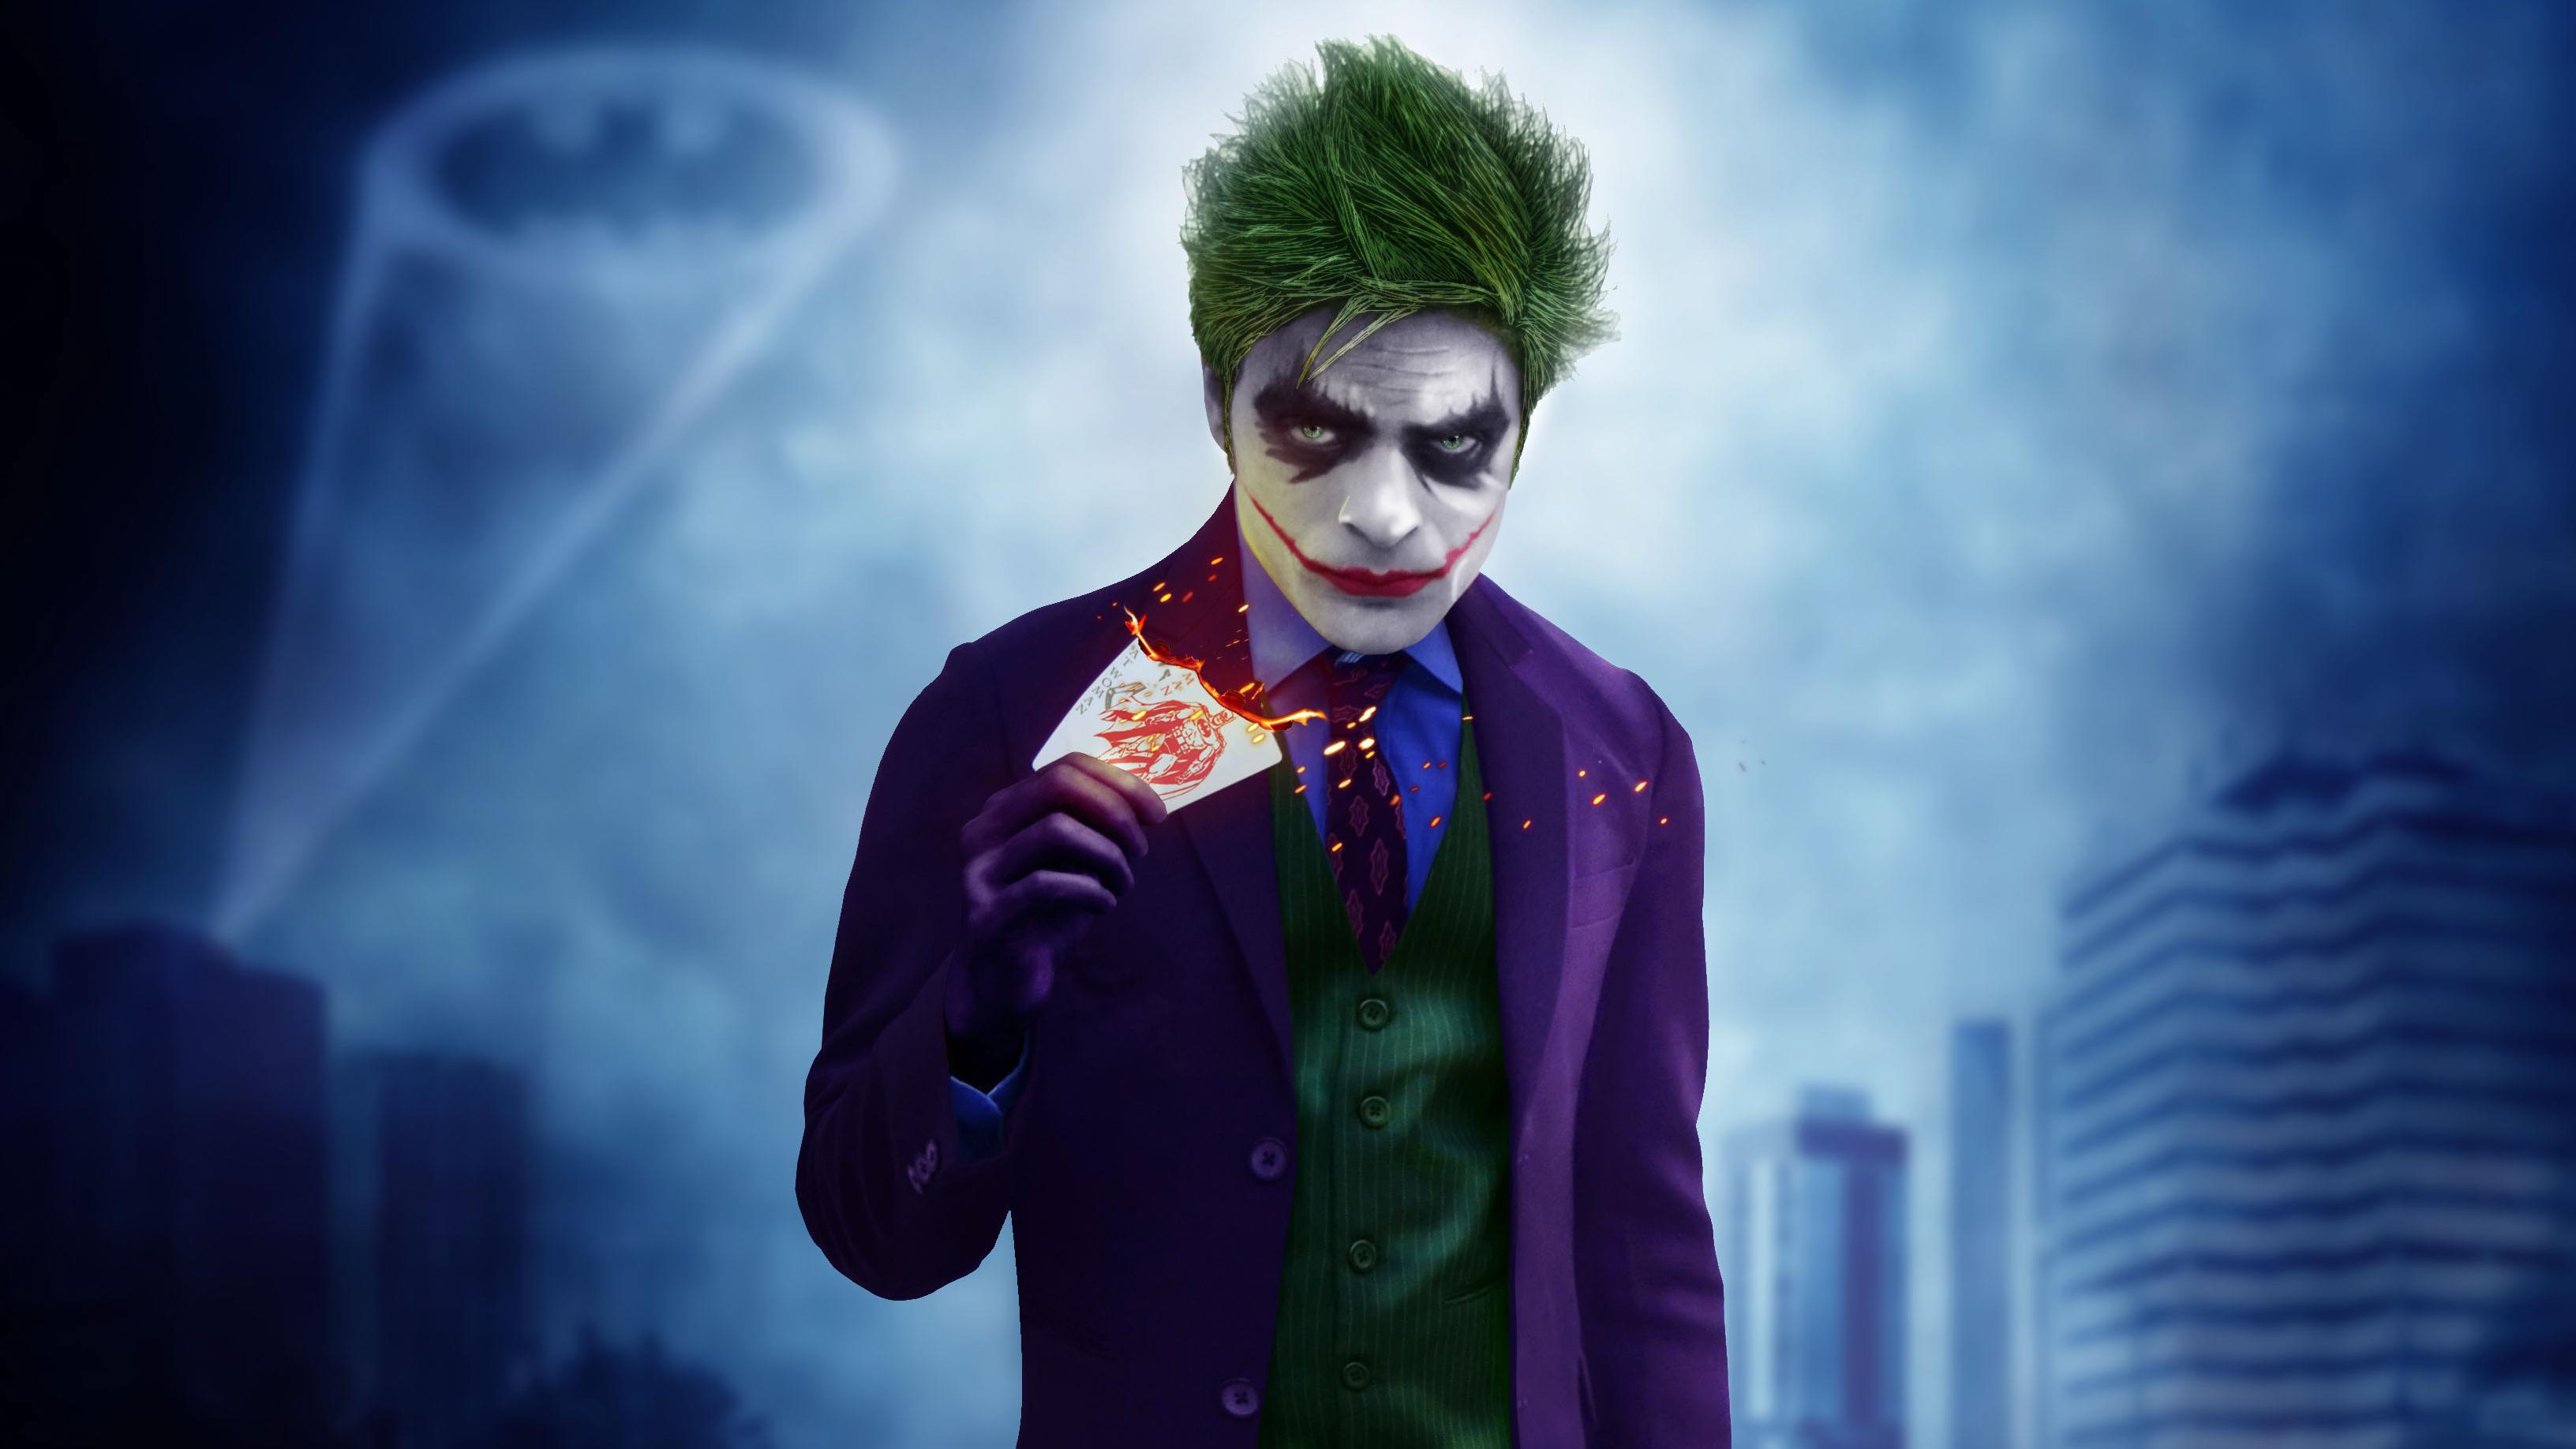 Joker Cosplay, HD Superheroes, 4k Wallpaper, Image